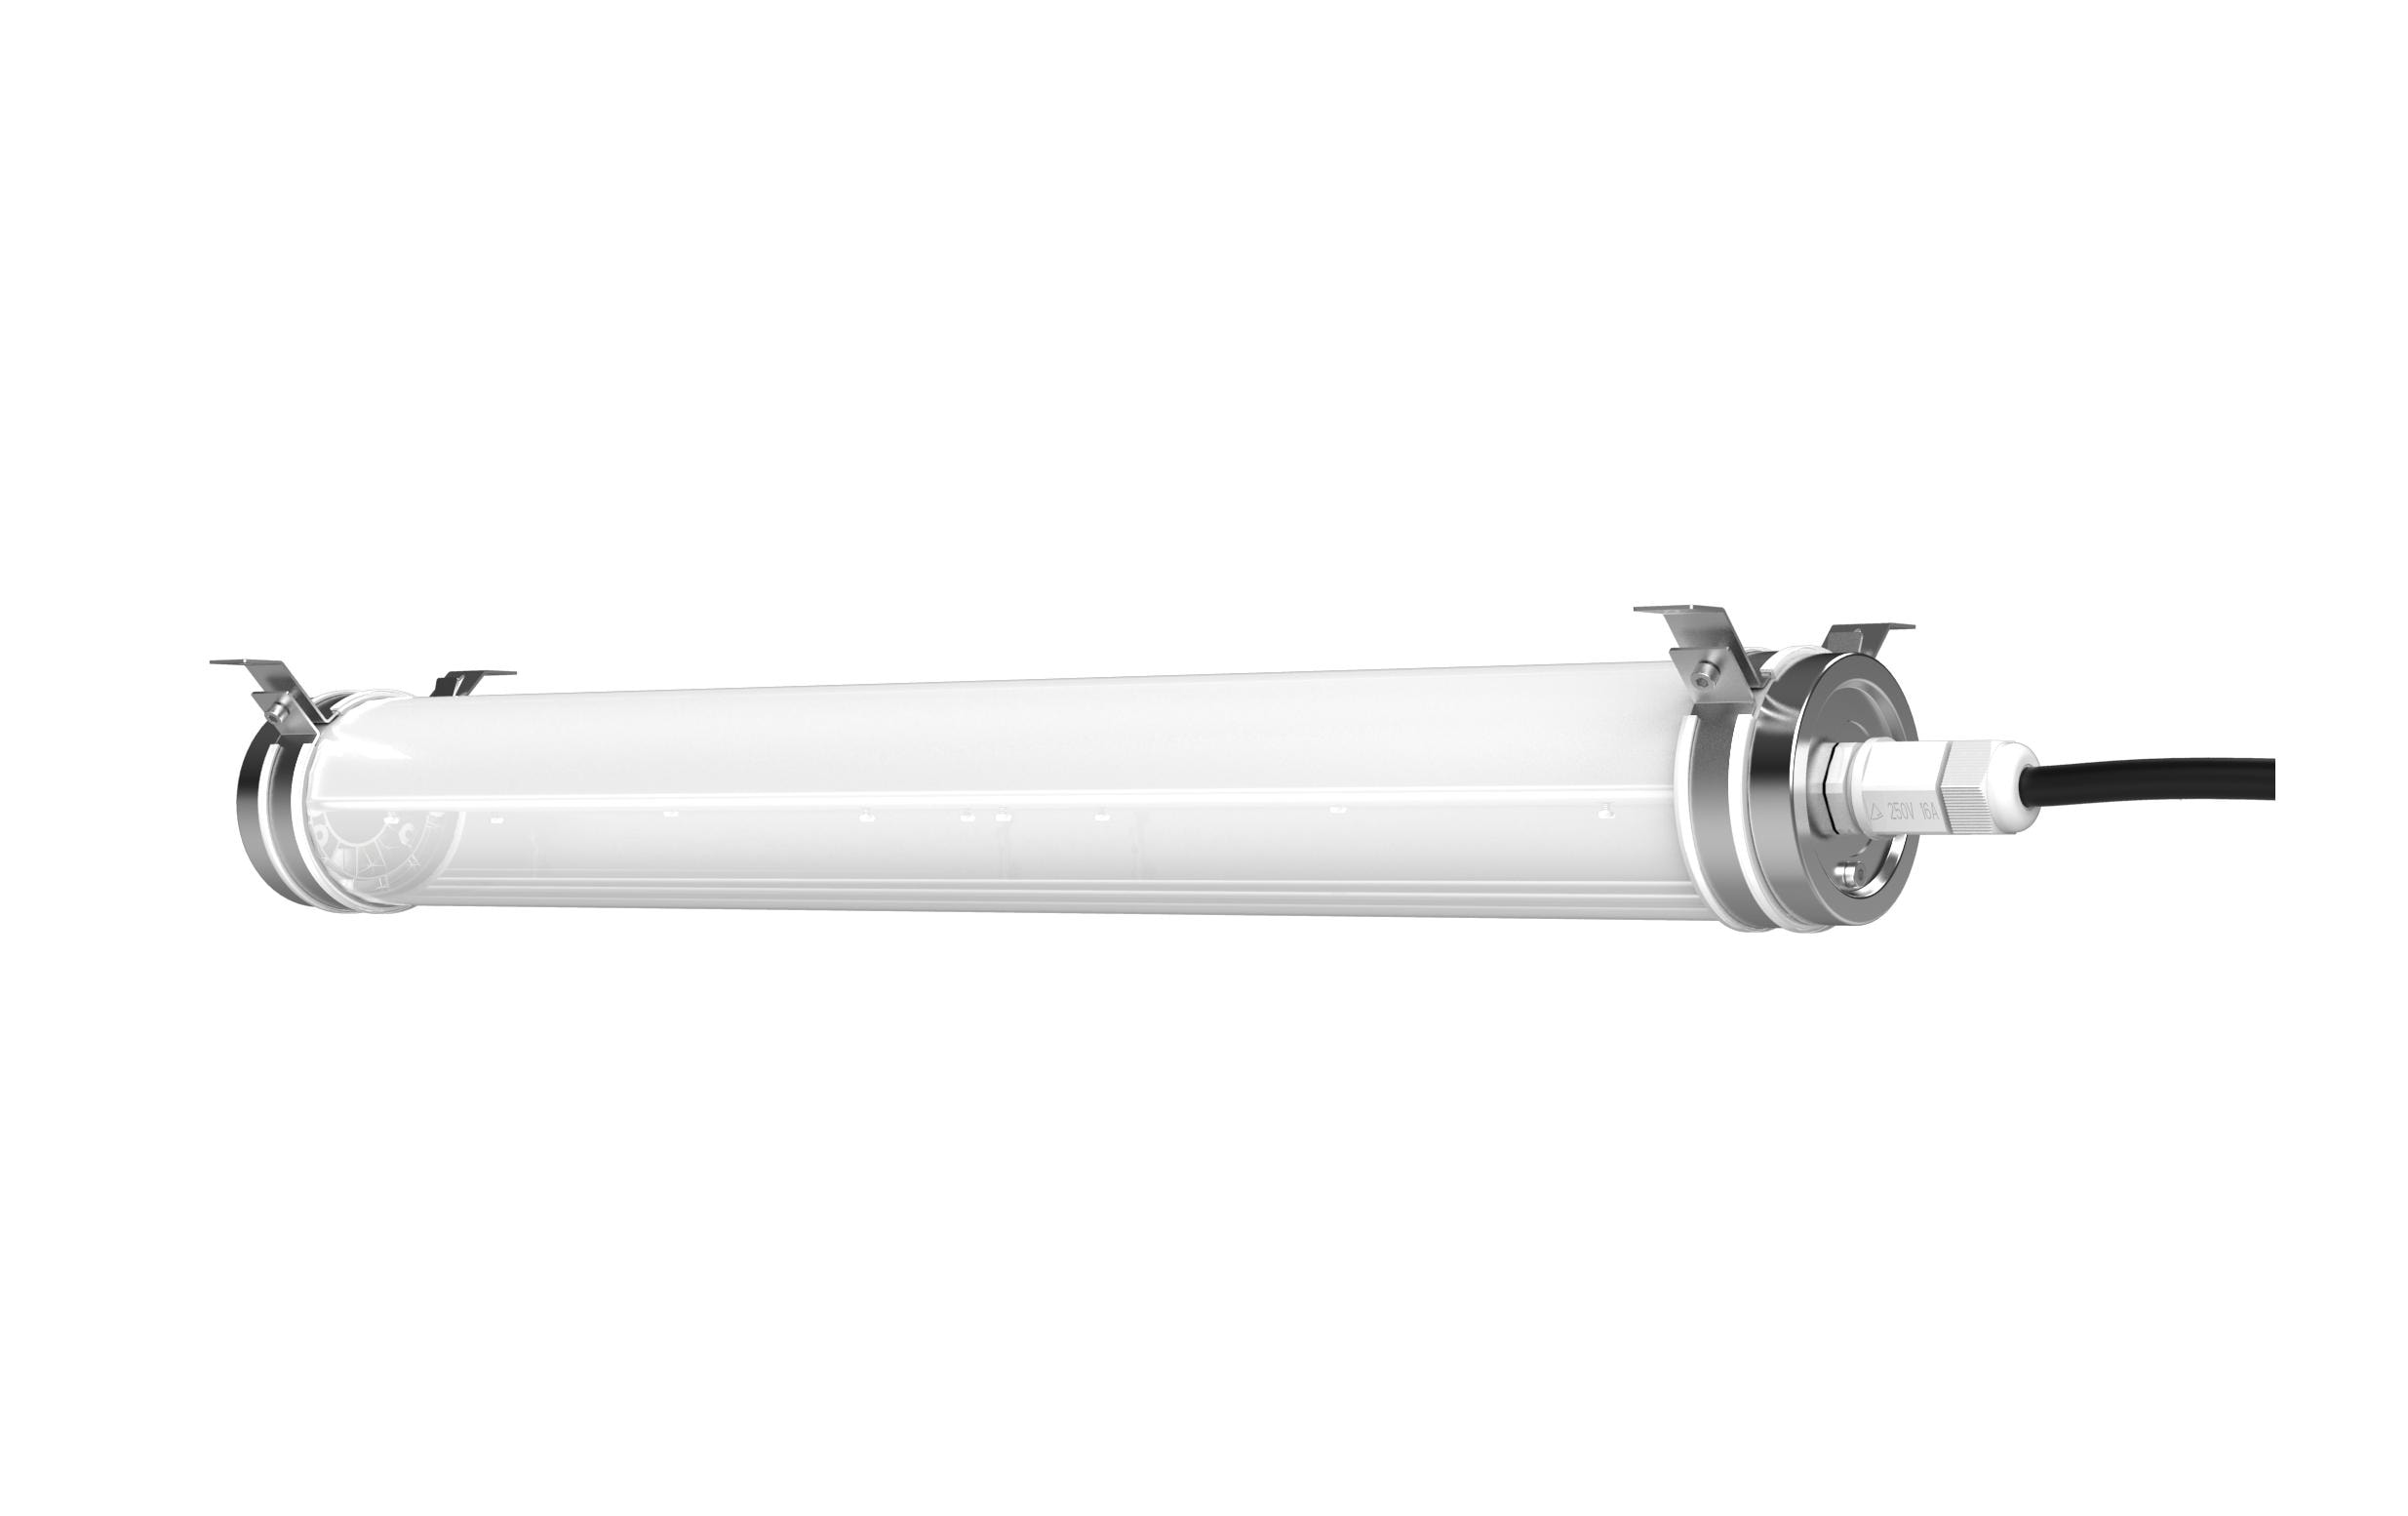 Elbro Feuchtraumleuchte LED Tubular, 40W, 5800 lm, 5000K